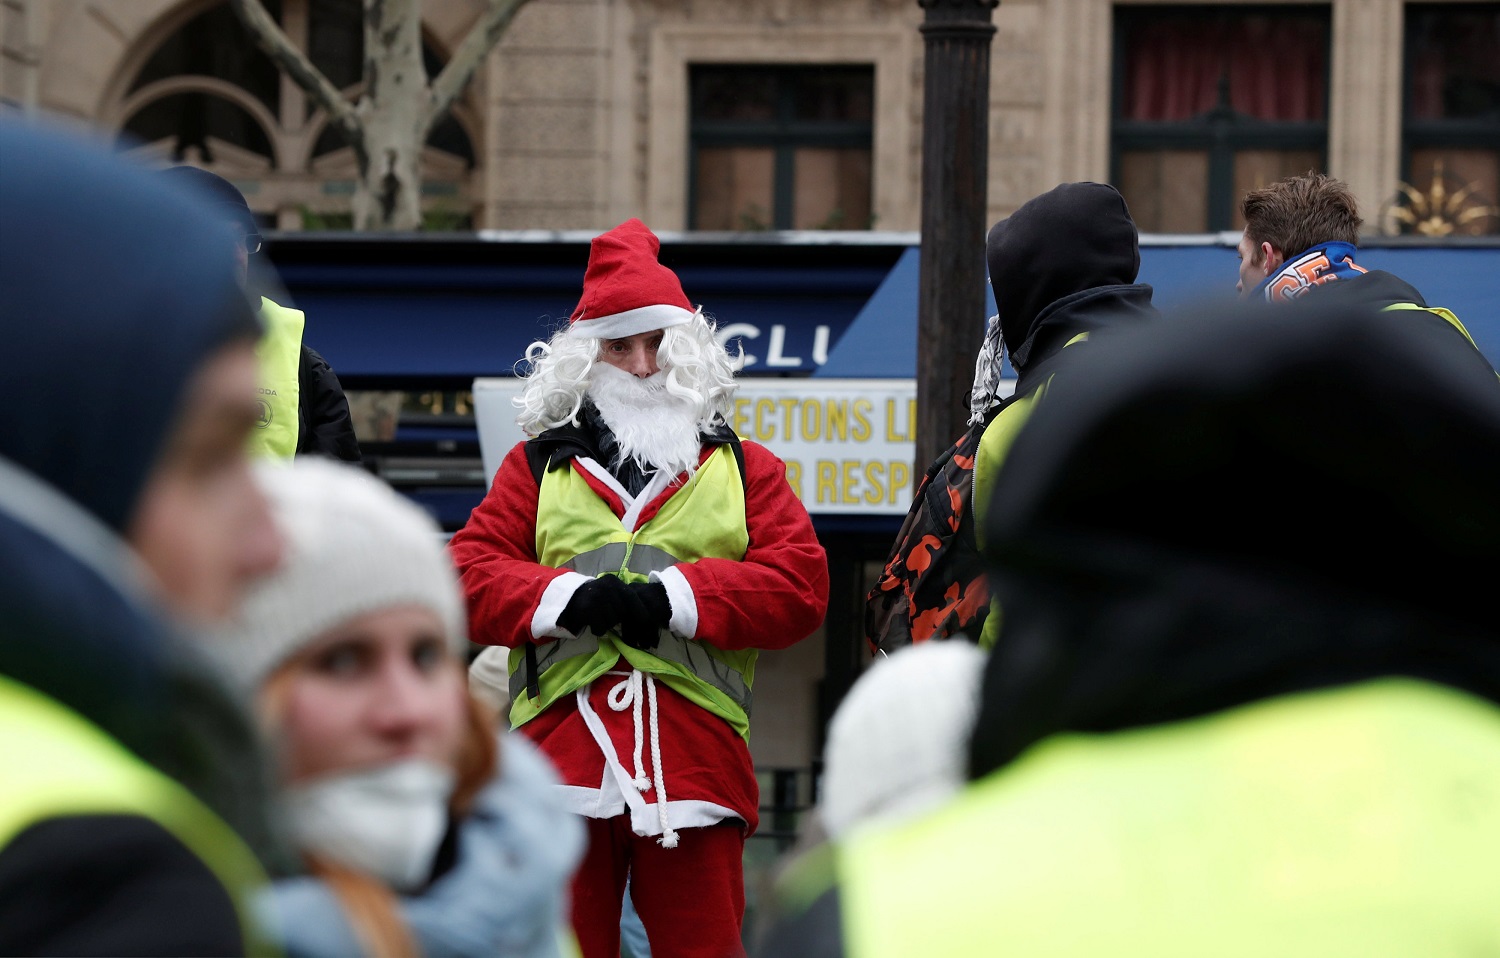 Movilización de “chalecos amarillos” en Francia lleva pocos manifestantes (fotos)